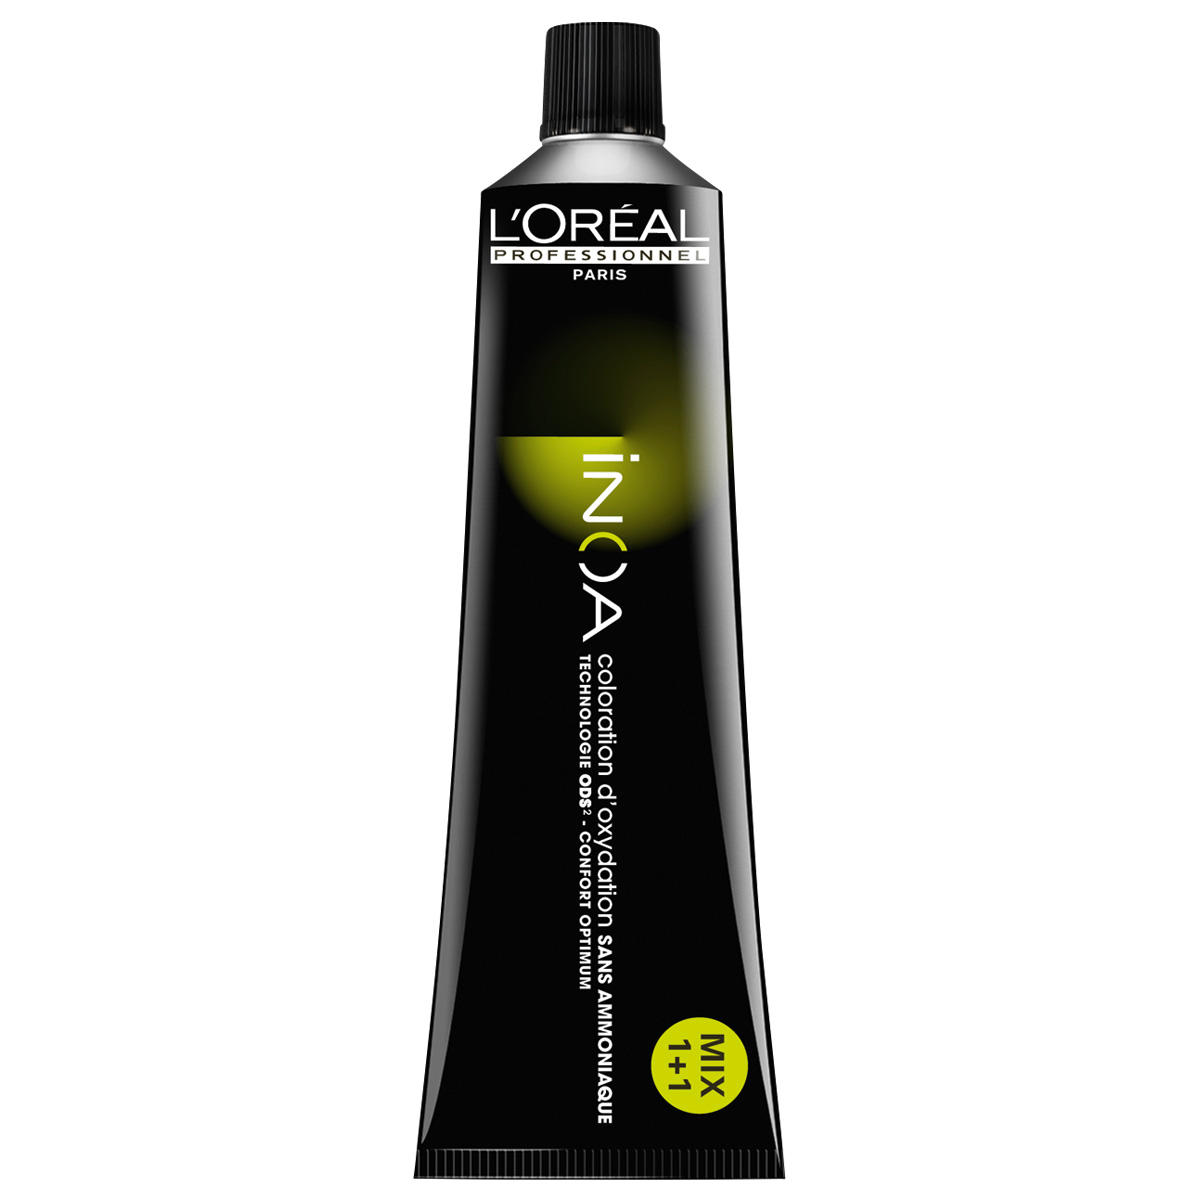 L'Oréal Professionnel Paris Coloration 9.0 Very Light Blonde Intensive, Tube 60 ml - 1